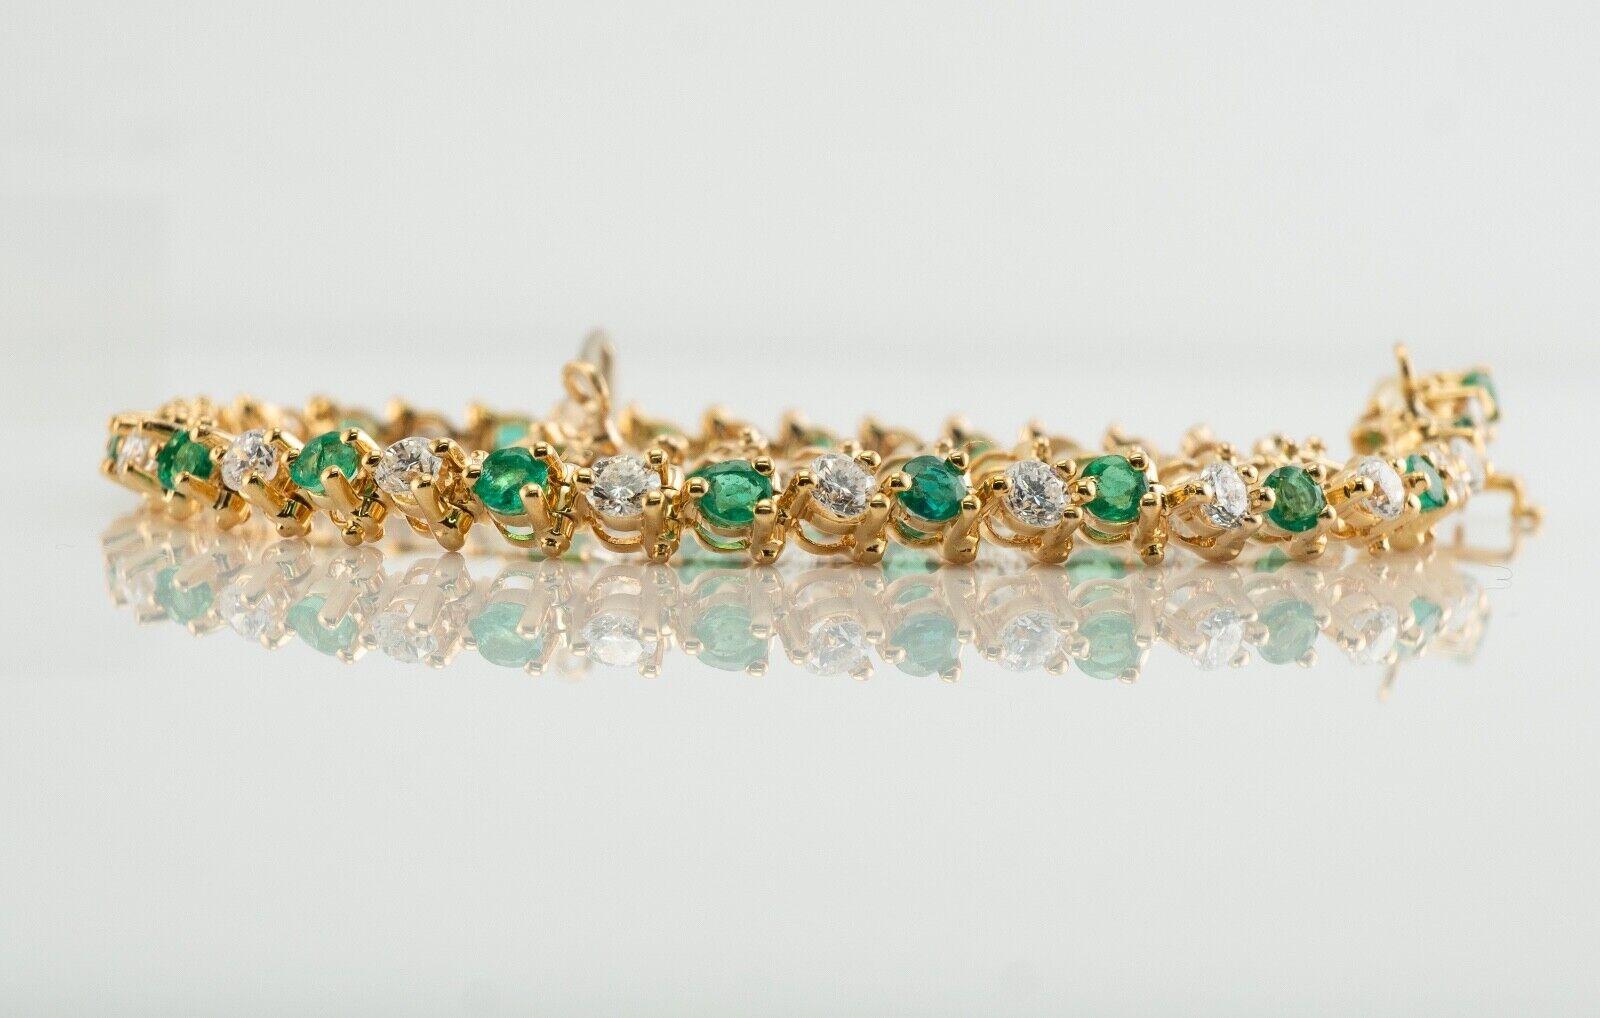 Ce magnifique bracelet de propriété est finement réalisé en or jaune 14 carats massif et serti d'émeraudes naturelles extraites du sol et de véritables diamants. Vingt-six émeraudes de 2 mm chacune totalisent 1,04 carat. Ces gemmes sont très propres